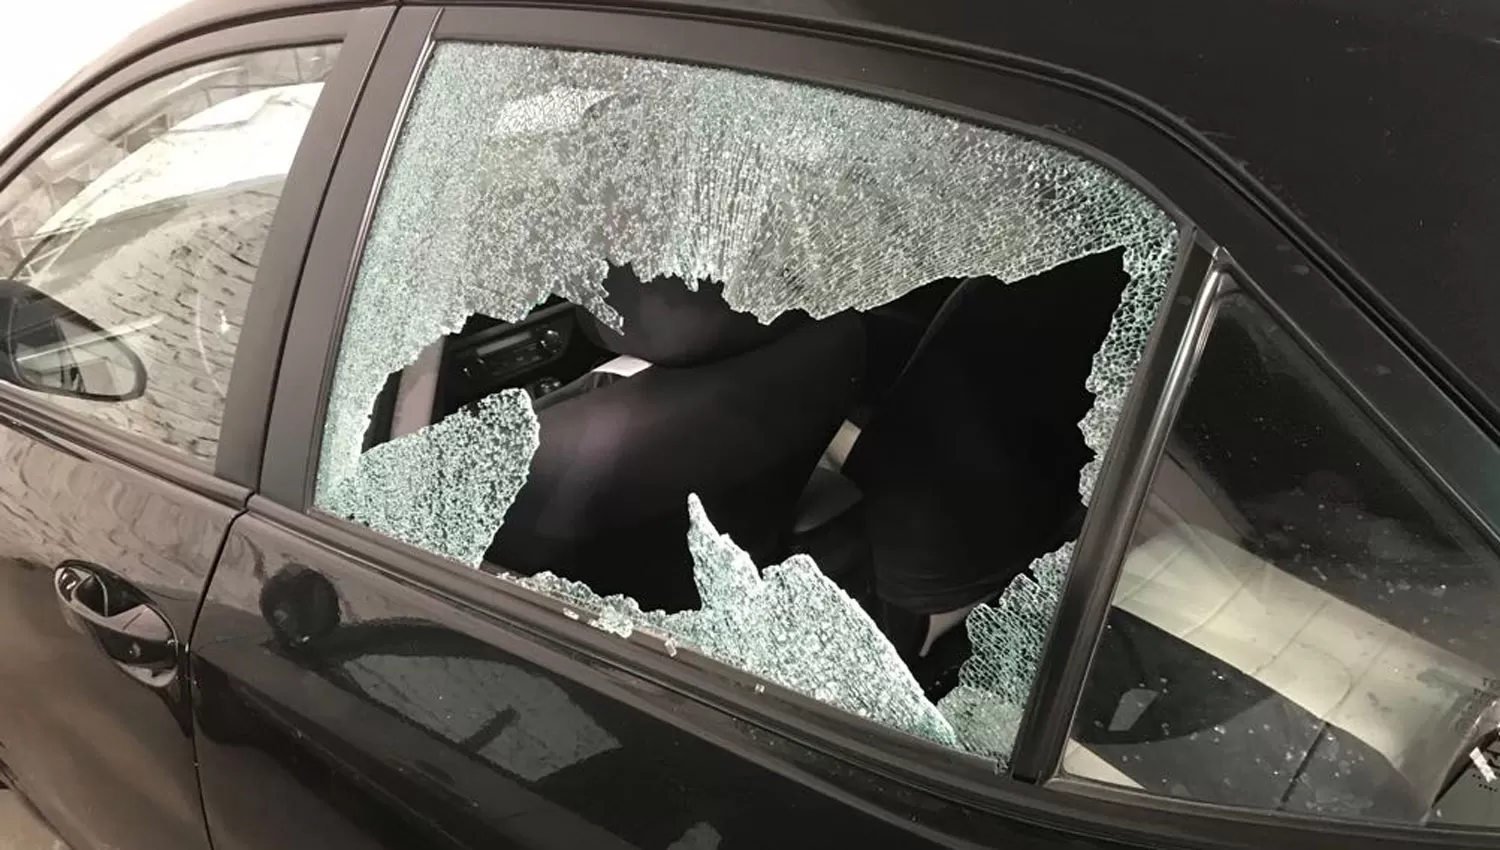 Así quedó el vidrio del auto de Víctor Ríos luego de un intento de robo. FOTO ENVIADA POR VÍCTOR RÍOS.